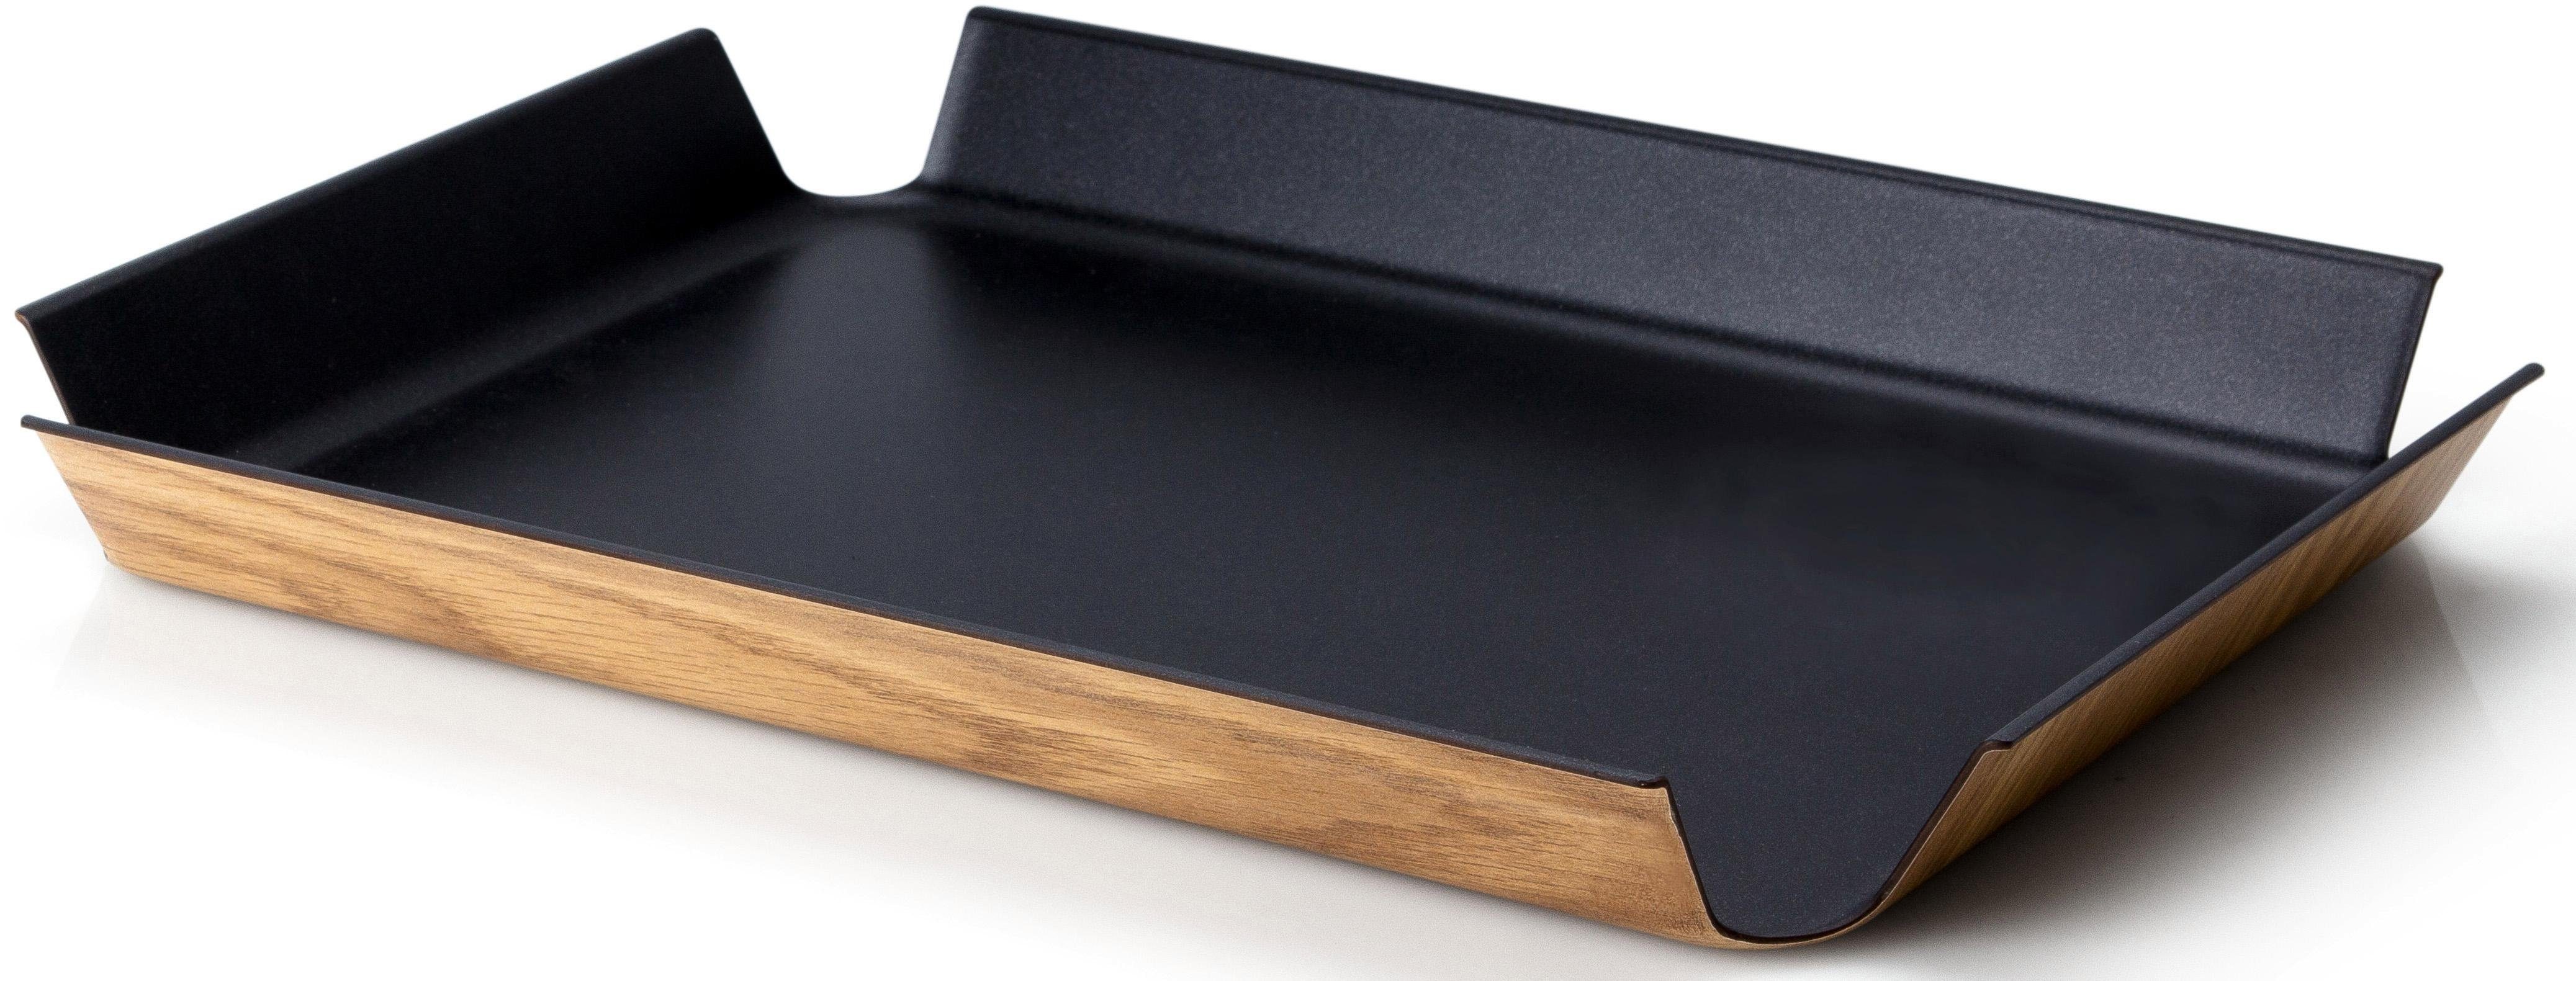 Continenta Tablett, Holz schwarz/holzfarben